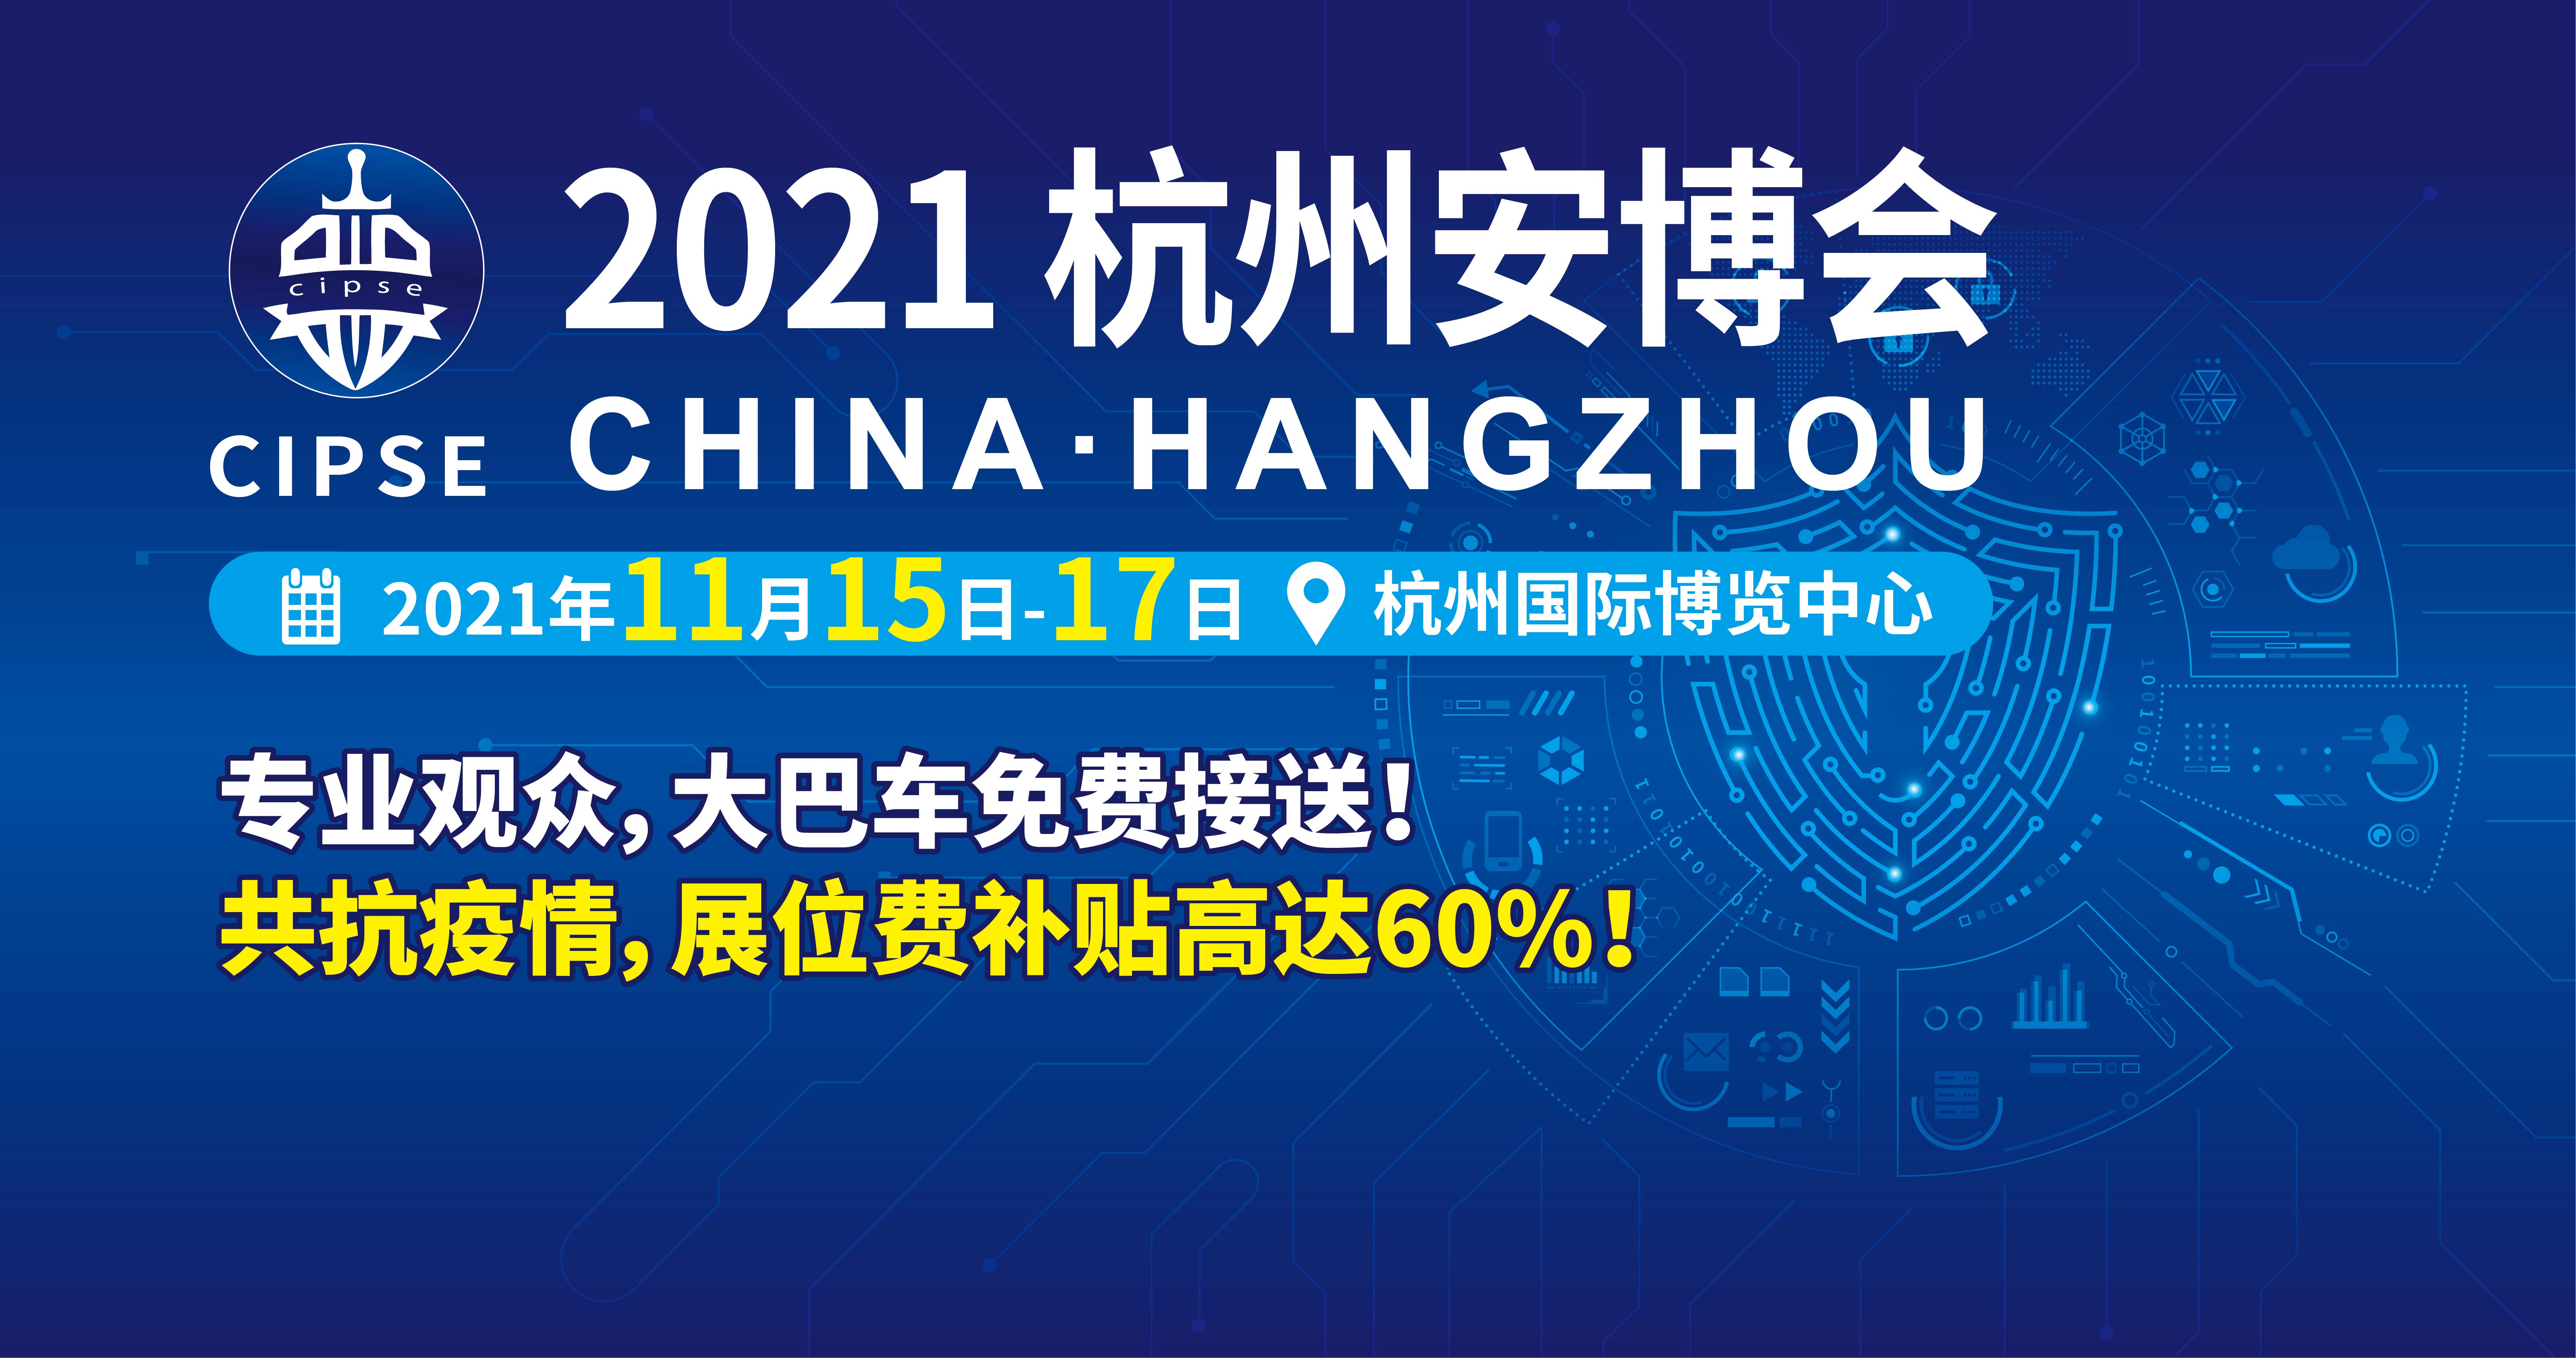 2021年安防展会|2021杭州安博会|CIPSE安博会|杭州新型智慧城市公共安全展览会|